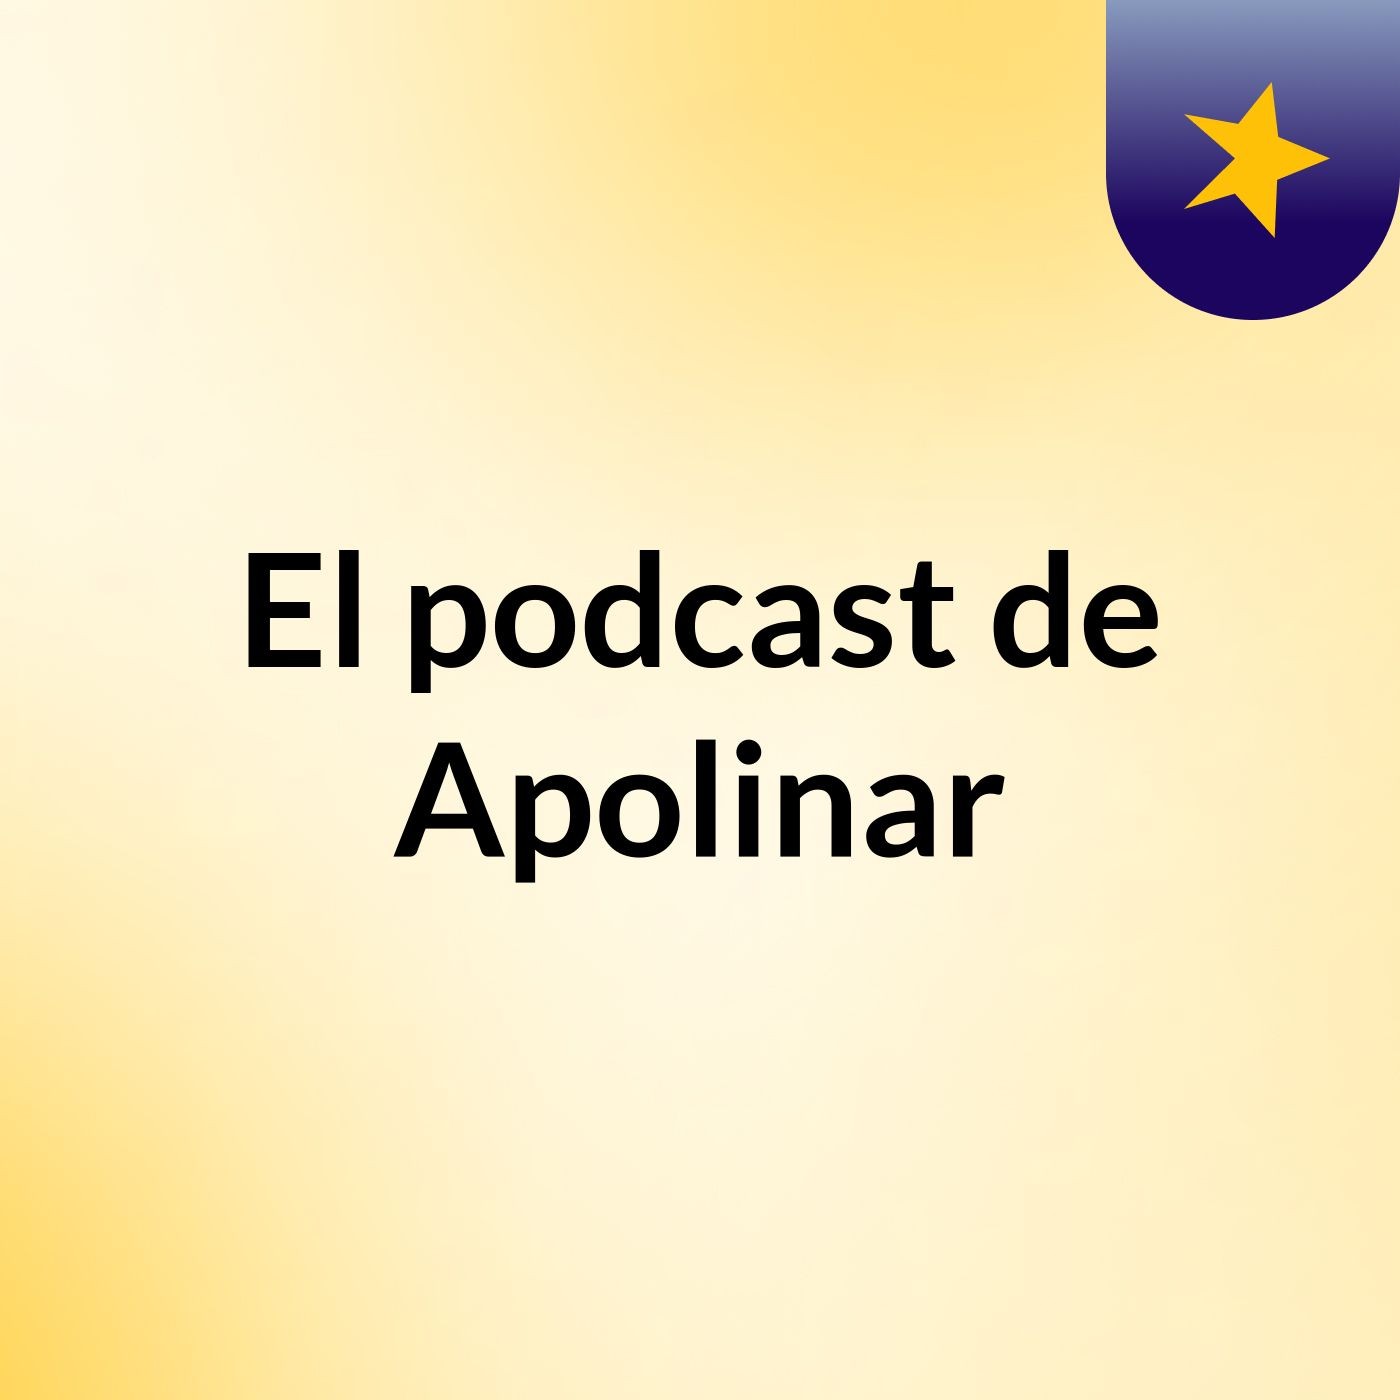 Episodio 2 - El podcast de Apolinar